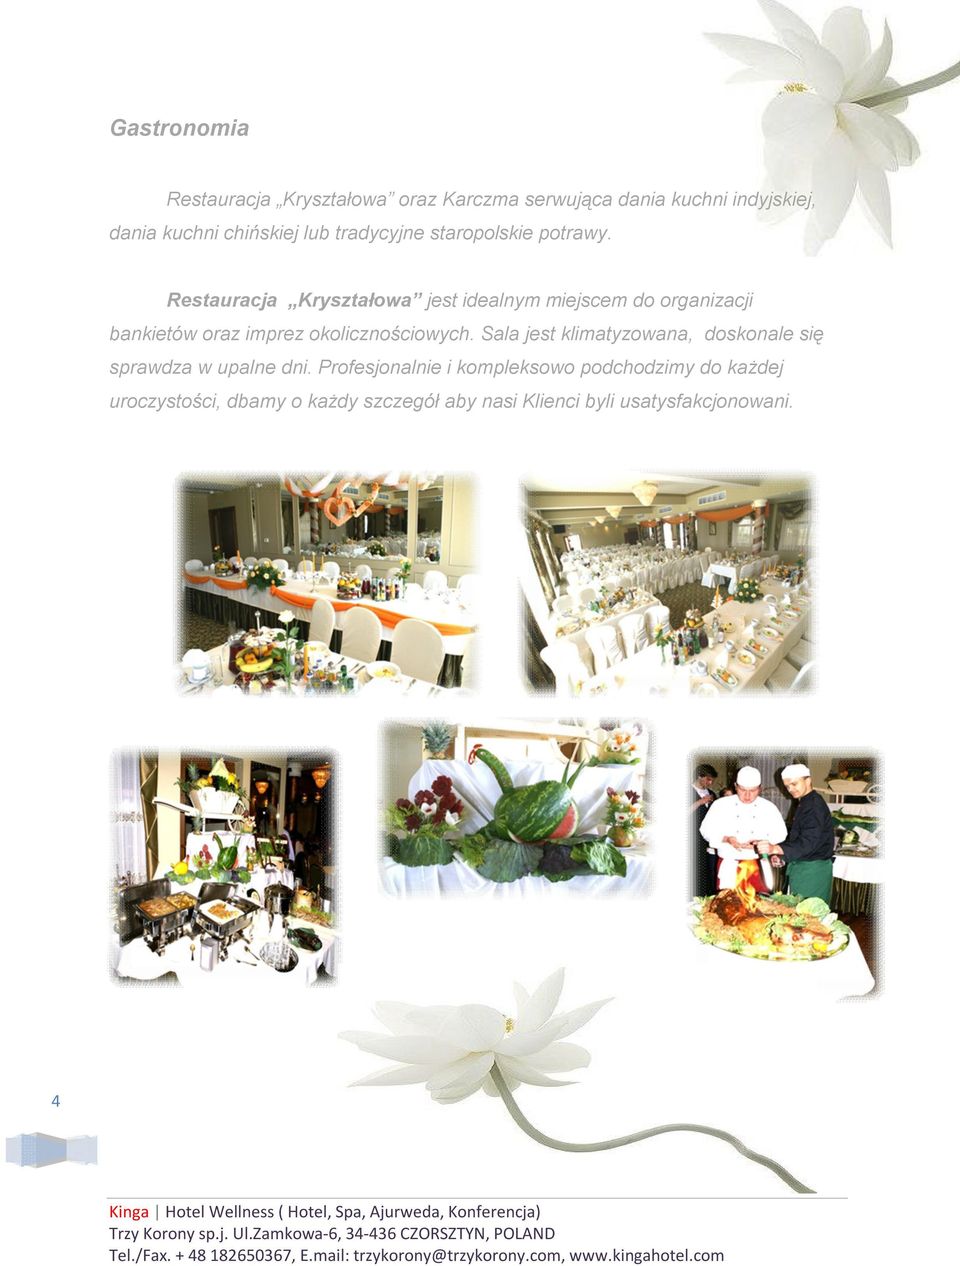 Restauracja Kryształowa jest idealnym miejscem do organizacji bankietów oraz imprez okolicznościowych.